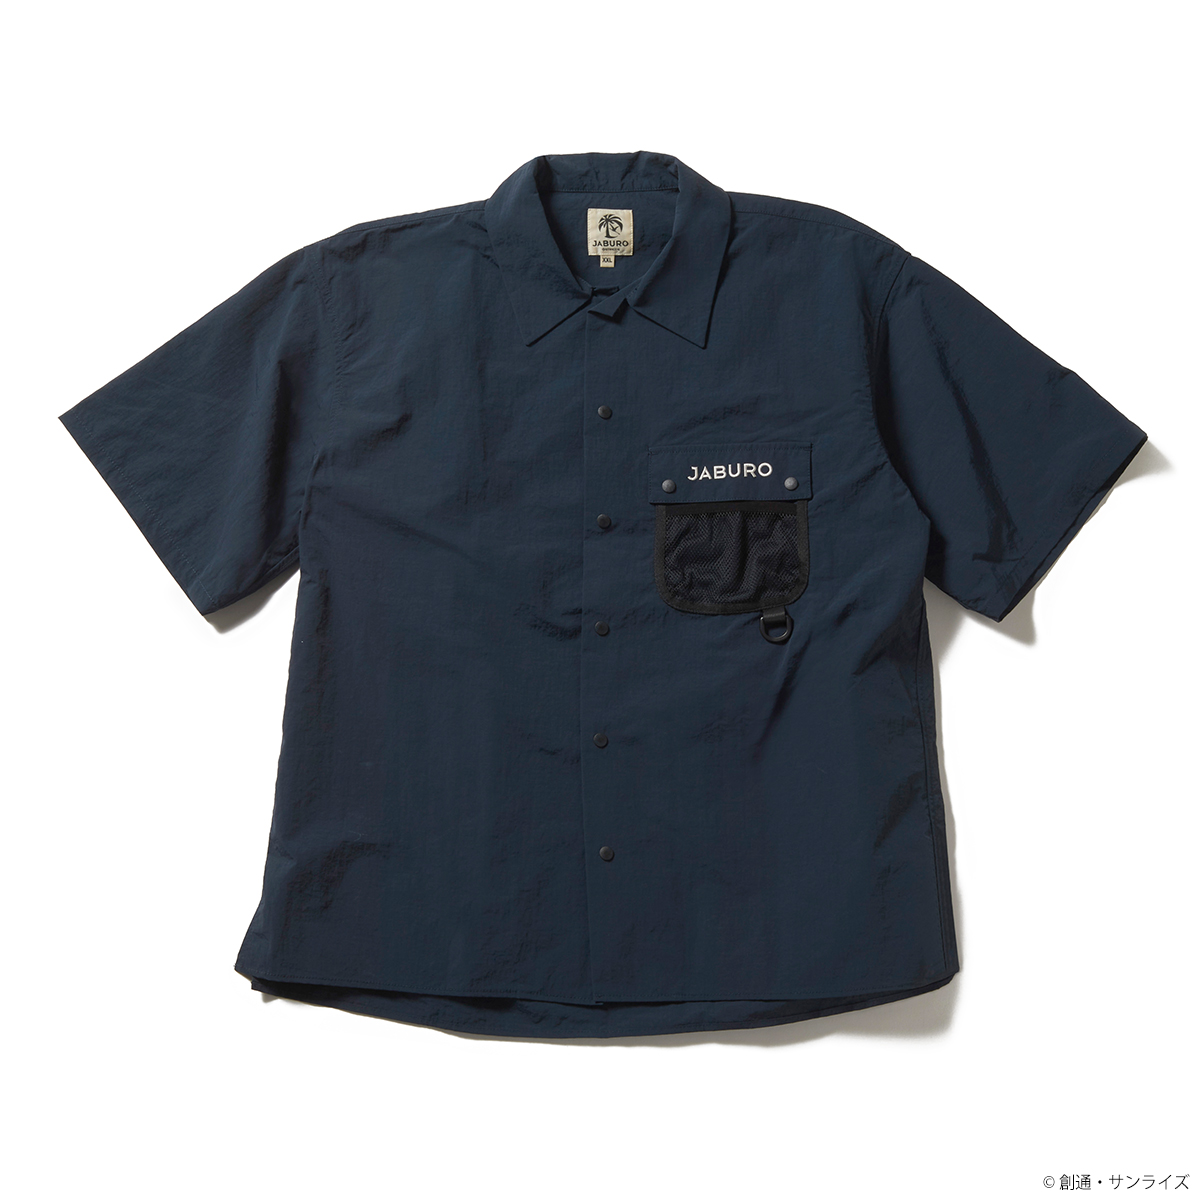 STRICT-G JABURO『機動戦士ガンダム』オープンカラーシャツ